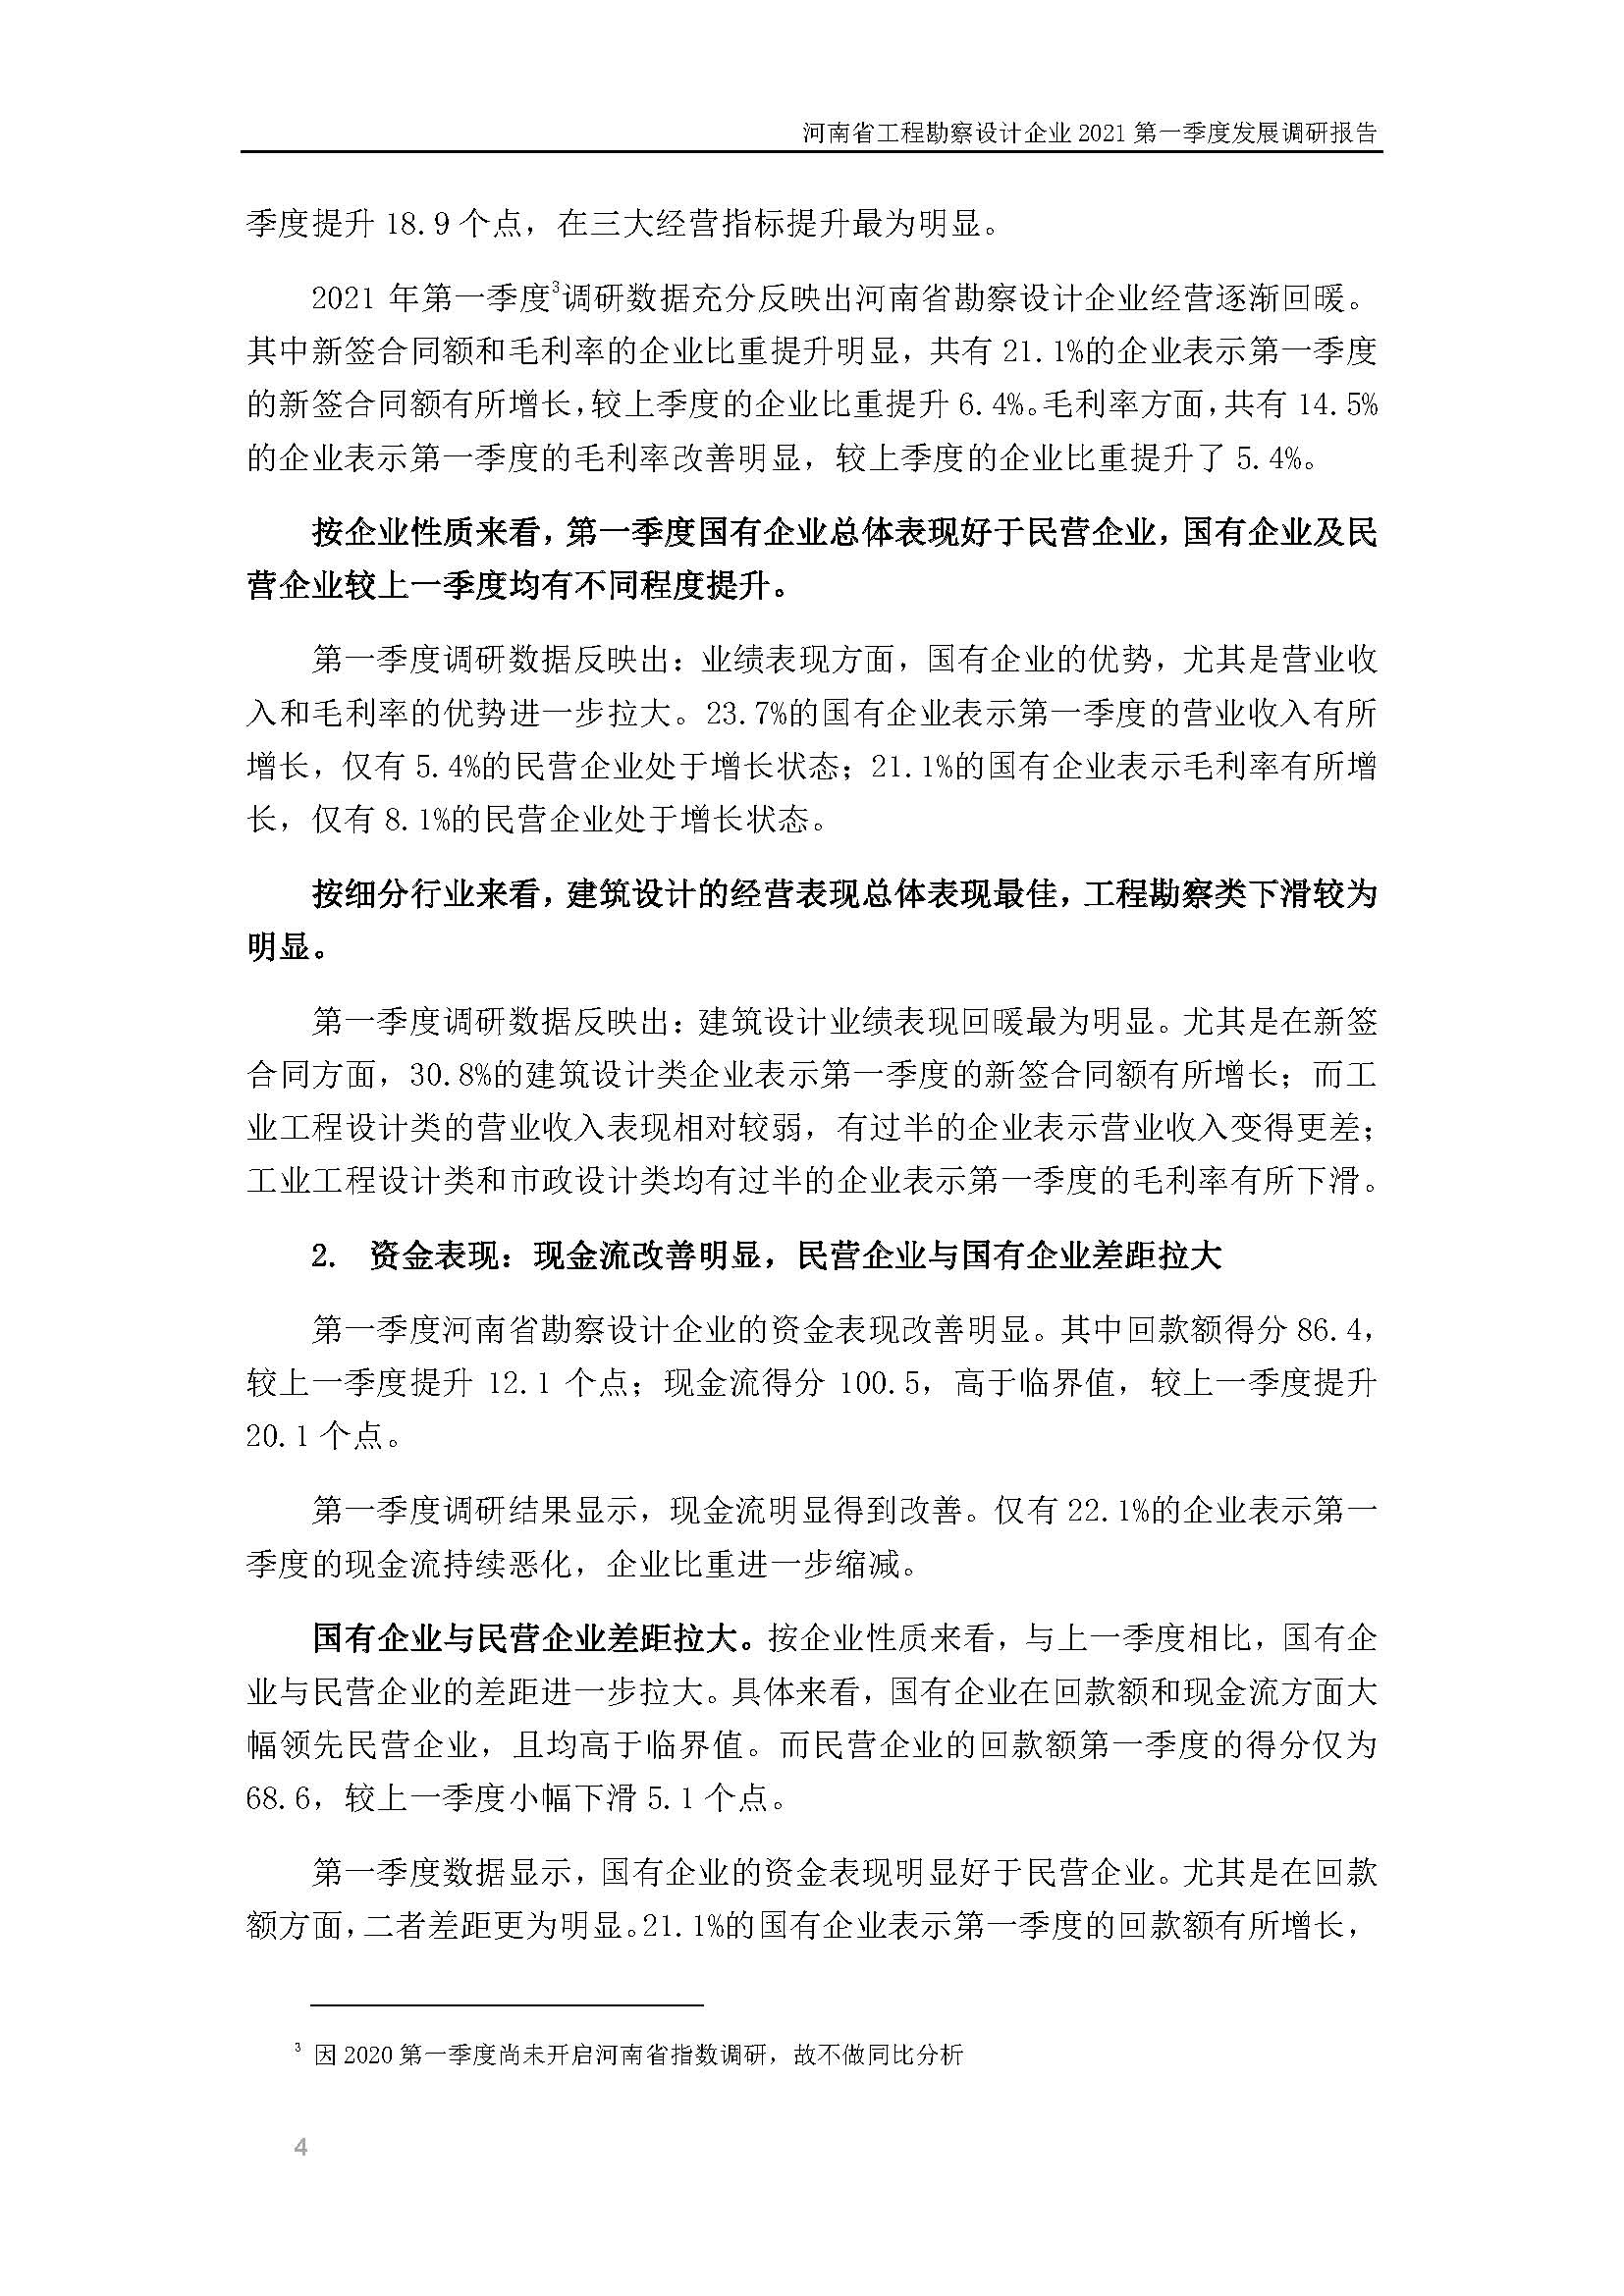 河南省工程勘察设计企业2021第一季度发展调研报告（一）_页面_5.jpg